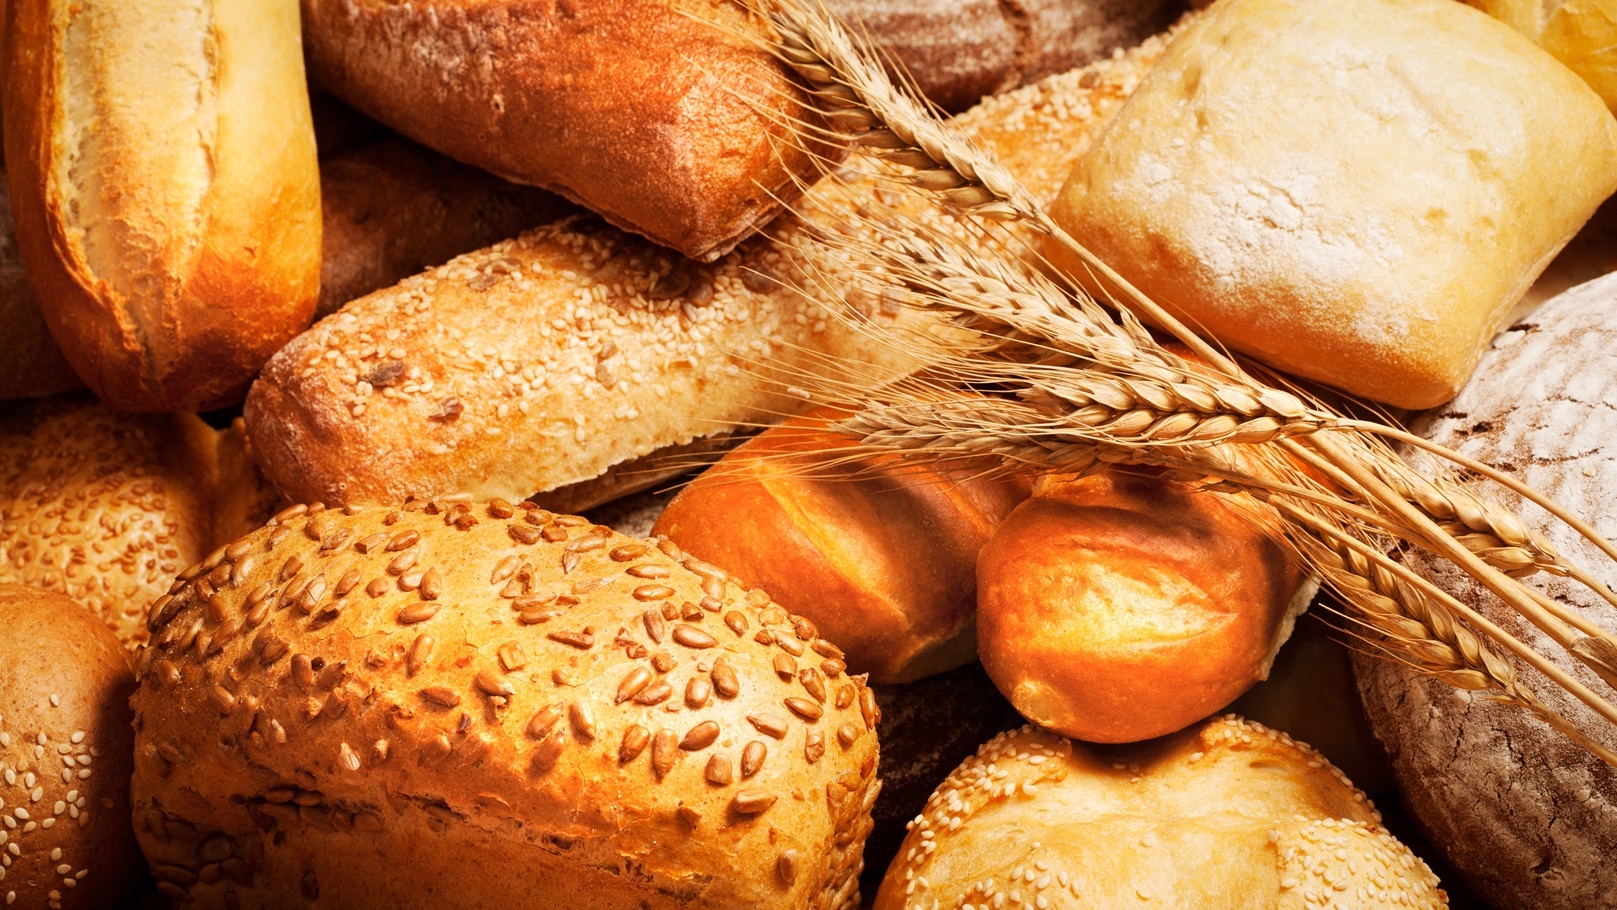 bread-2021-08-26-16-35-43-utc